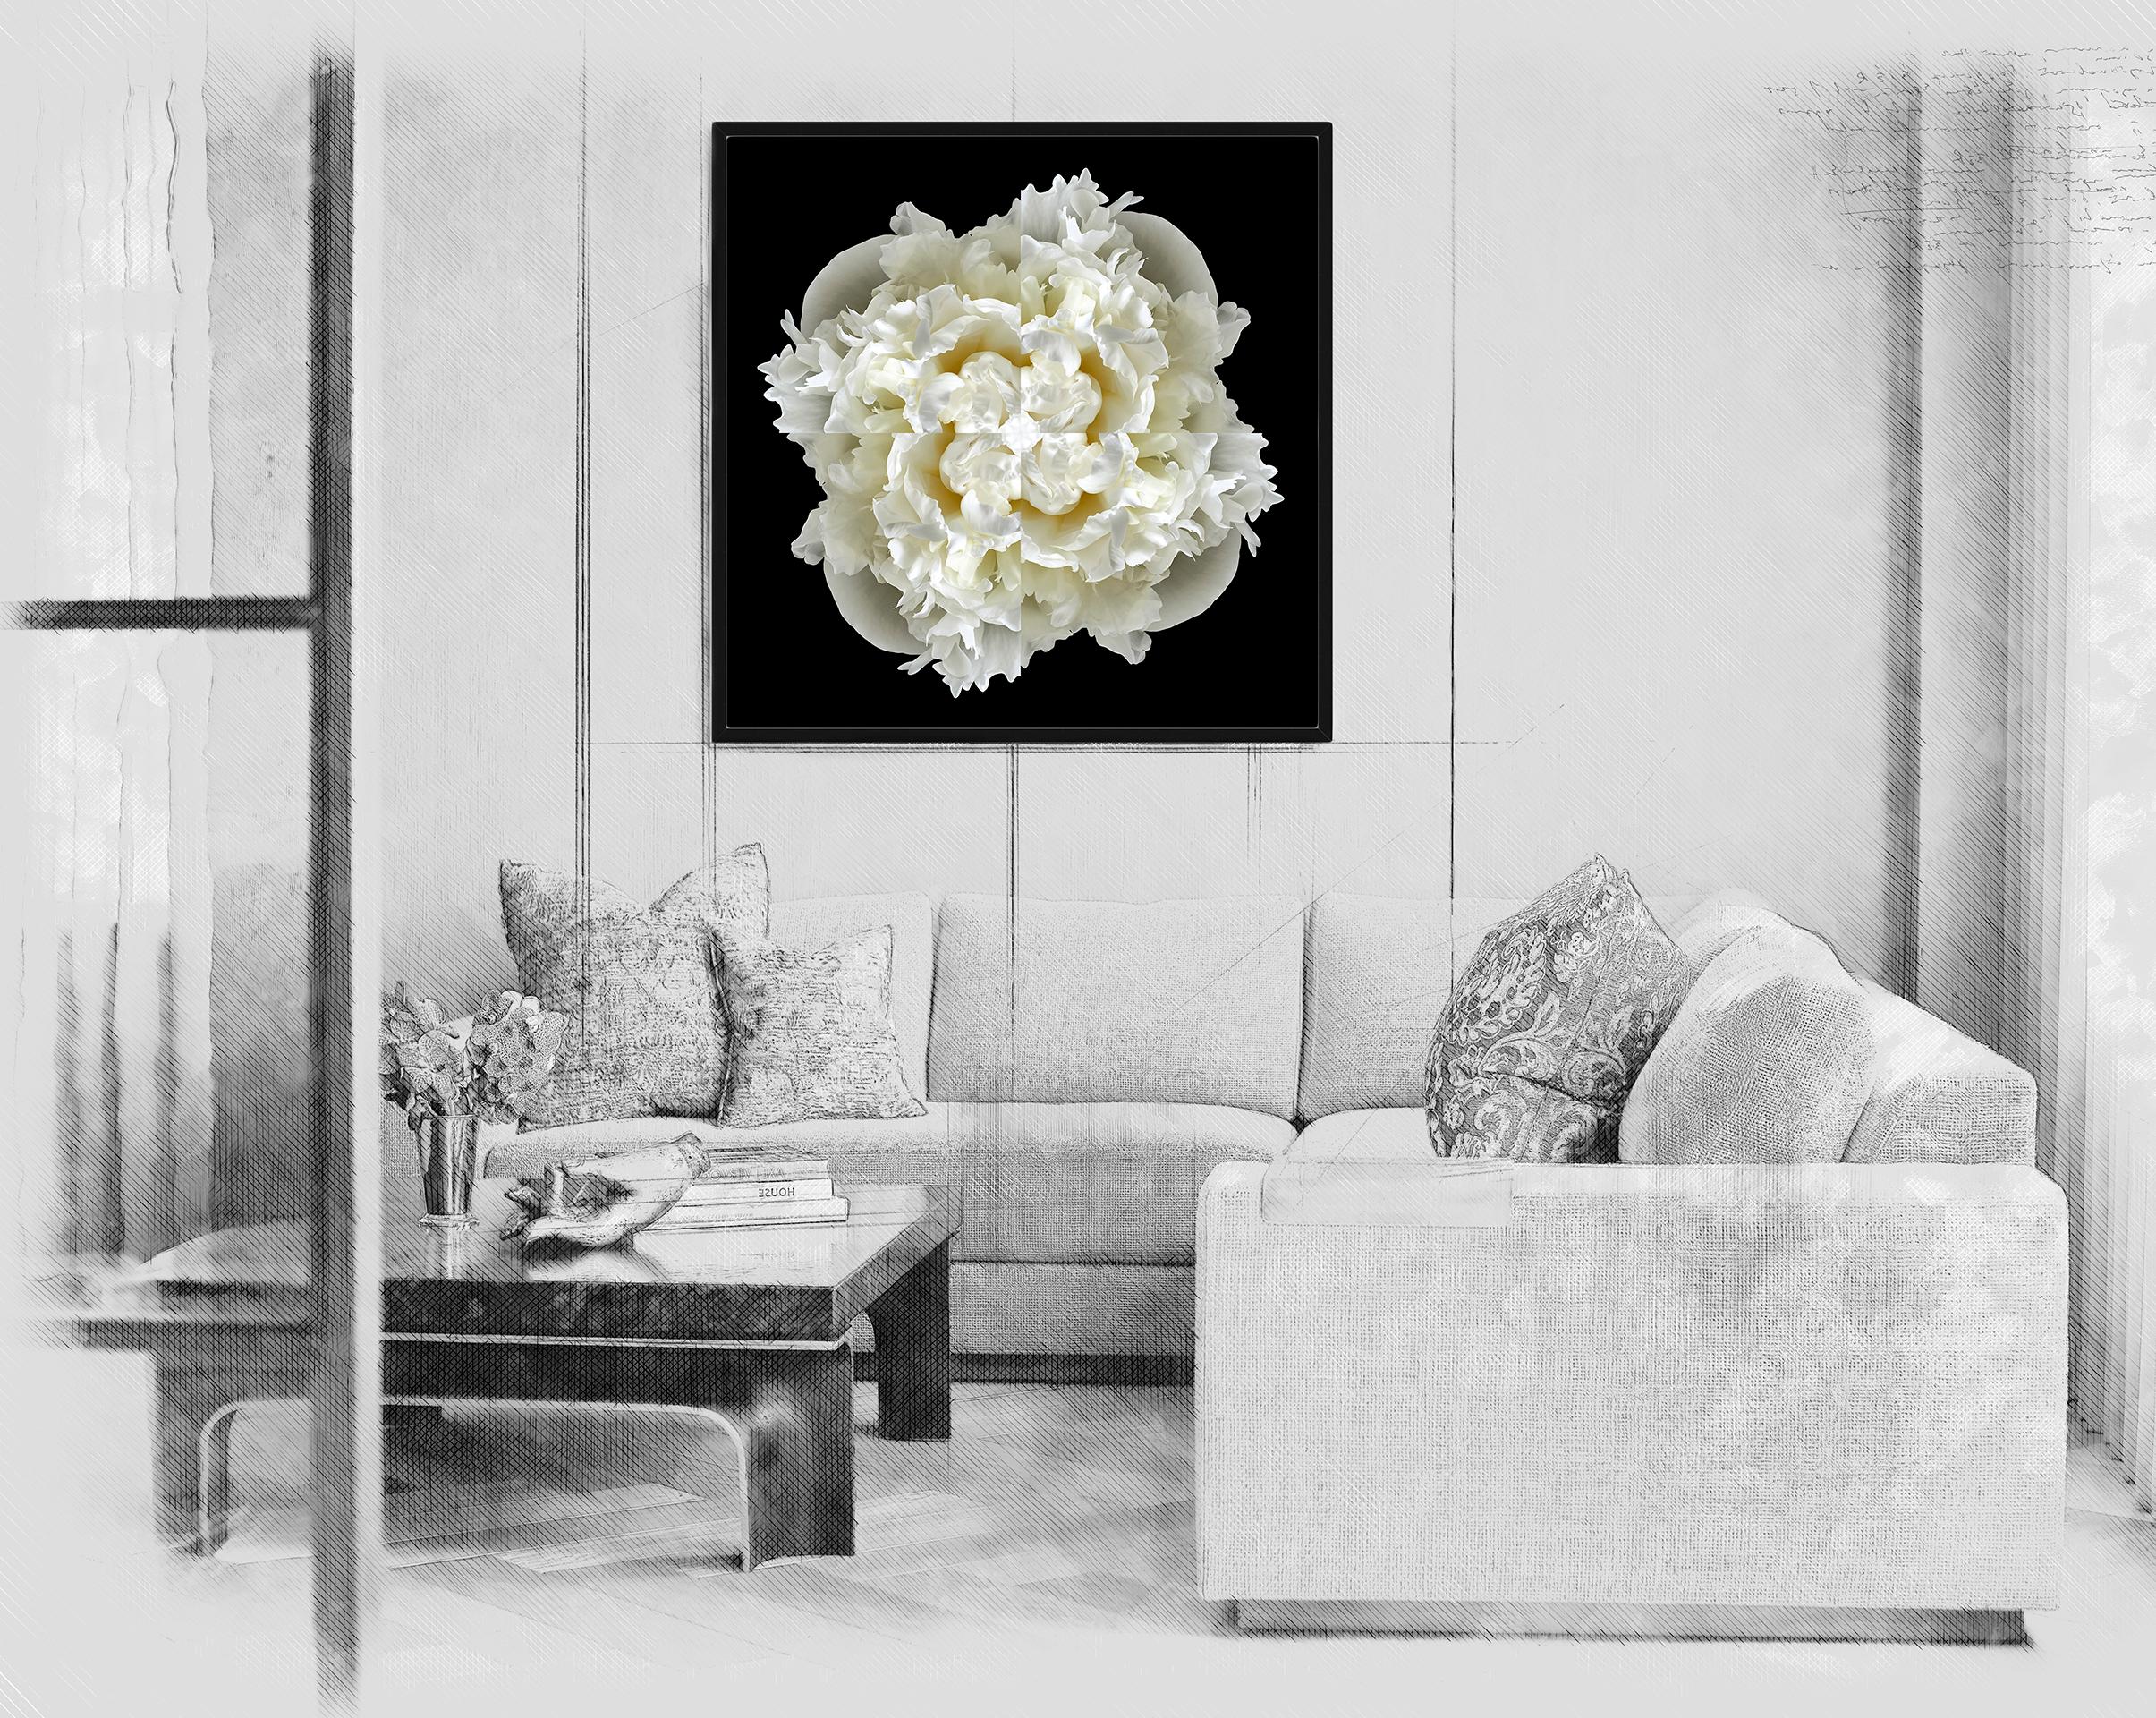 Dieser Druck zeigt die spielerische Beziehung zwischen natürlichen Formen und Pflanzen. In diesem Bild nutzt Erin die natürliche Komposition der weißen Pfingstrose und ihre eigene Collagearbeit, um mit der Blume ein hypnotisches Mandala zu schaffen.